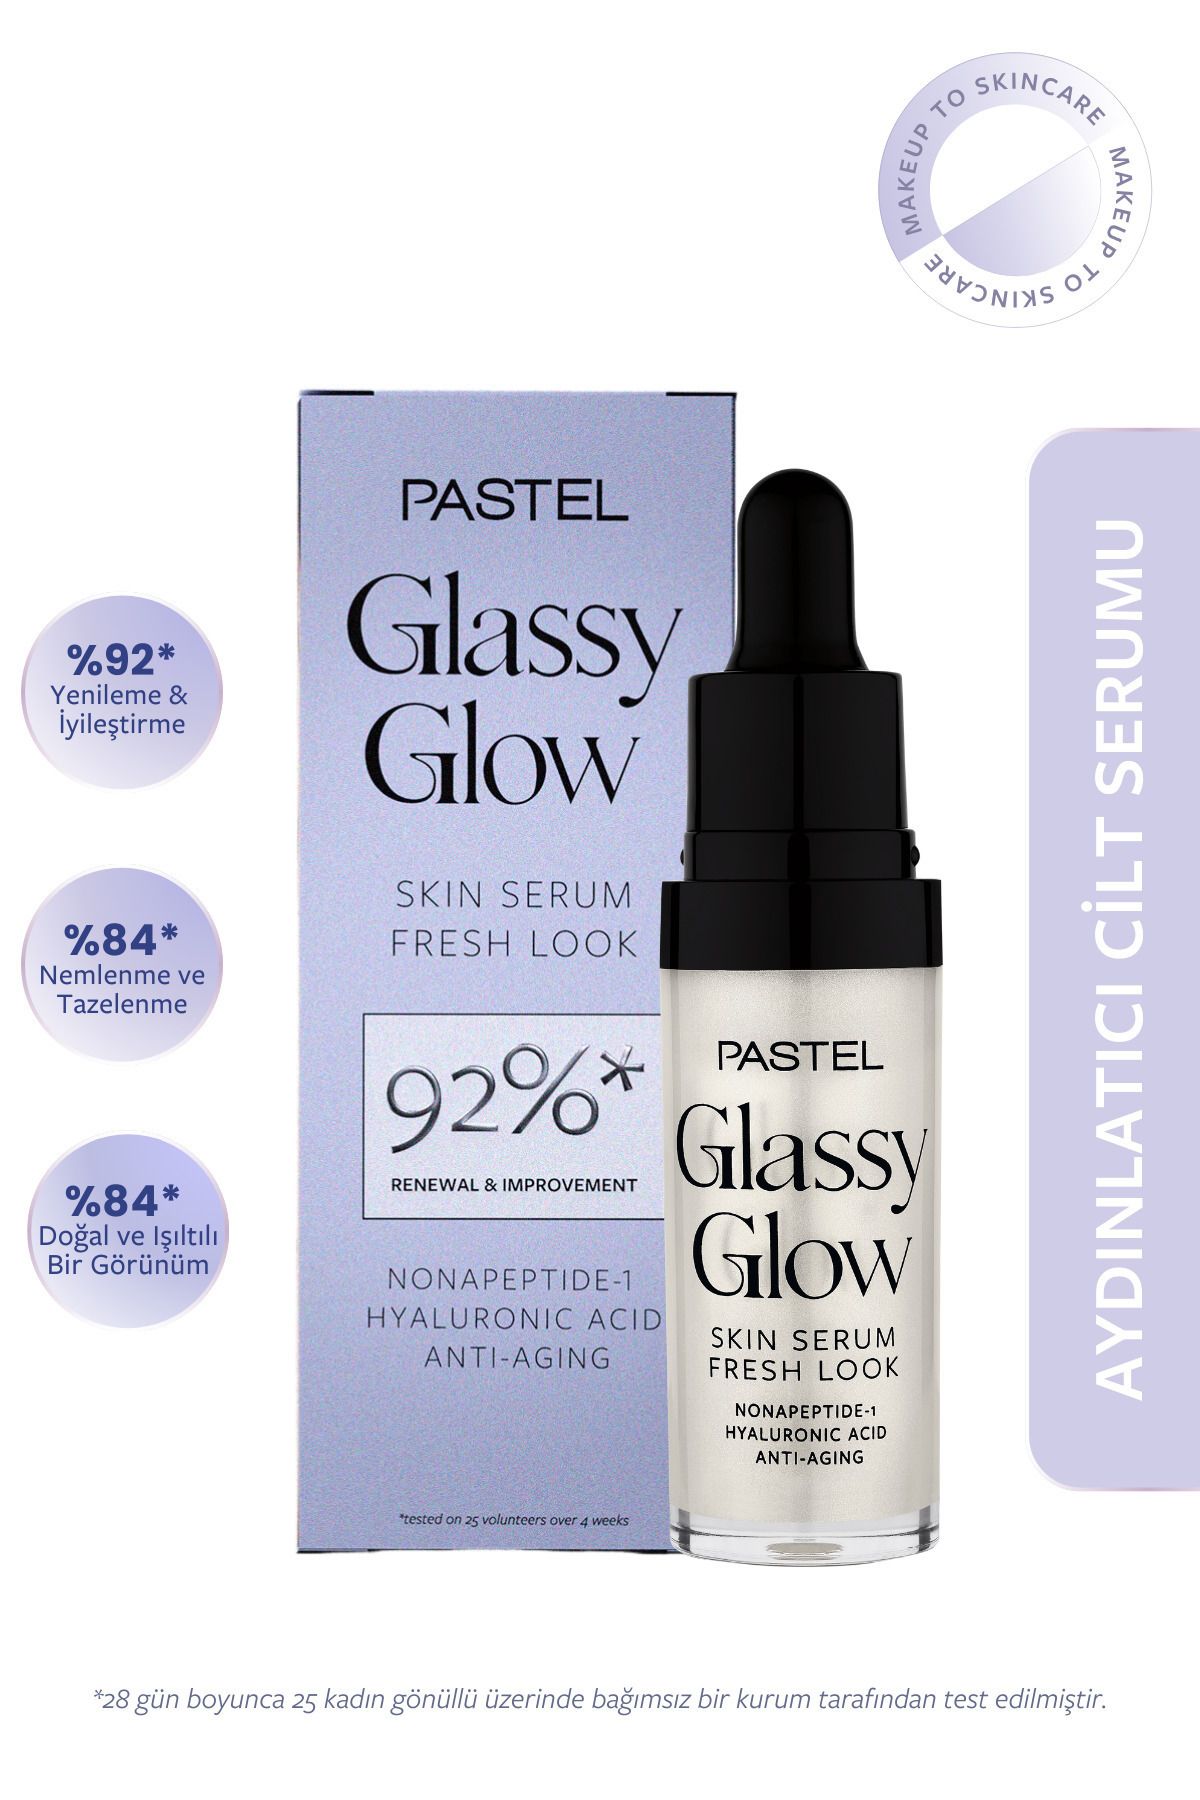 Pastel İpeksi ve Hafif Yapısıyla Aydınlık ve Enerjik Bir Görünüm Veren Glassy Glow Skin Serum 15ml